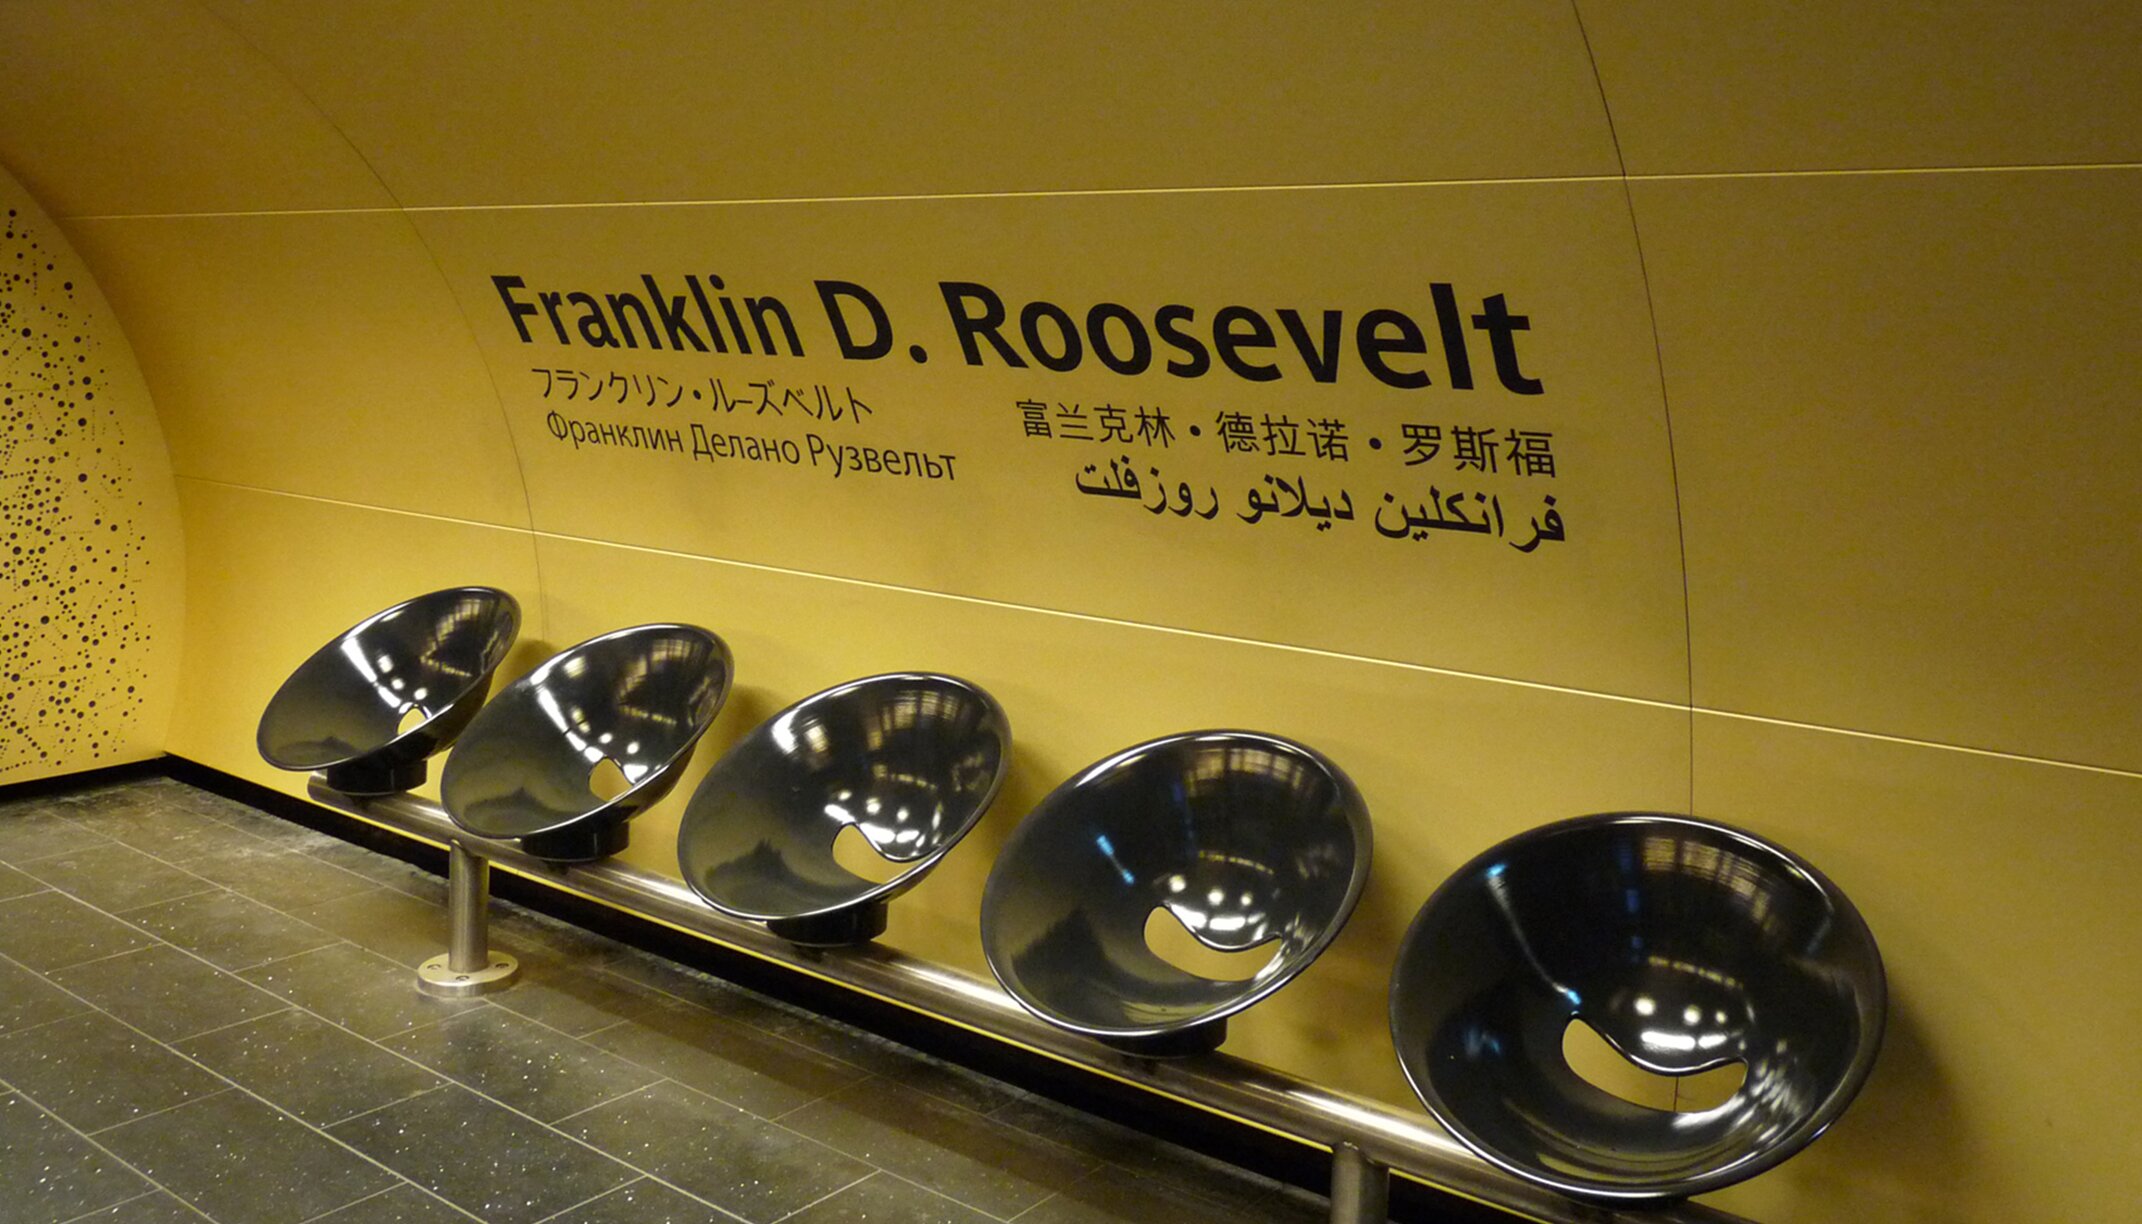 "Metro-Station Franklin D. Roosevelt" facade cladding, aluminium